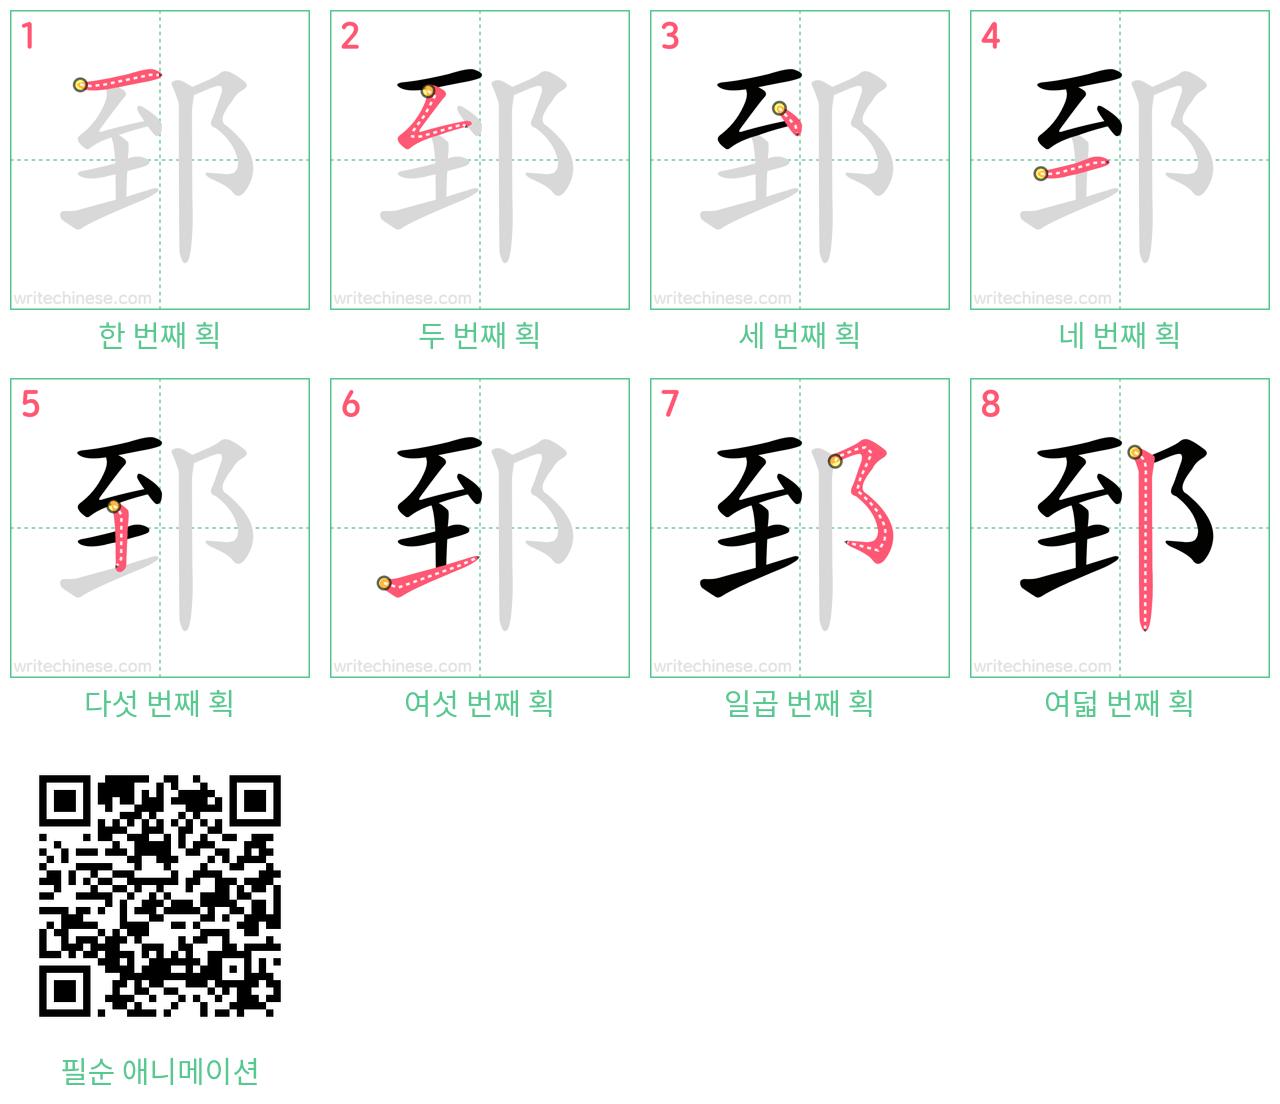 郅 step-by-step stroke order diagrams